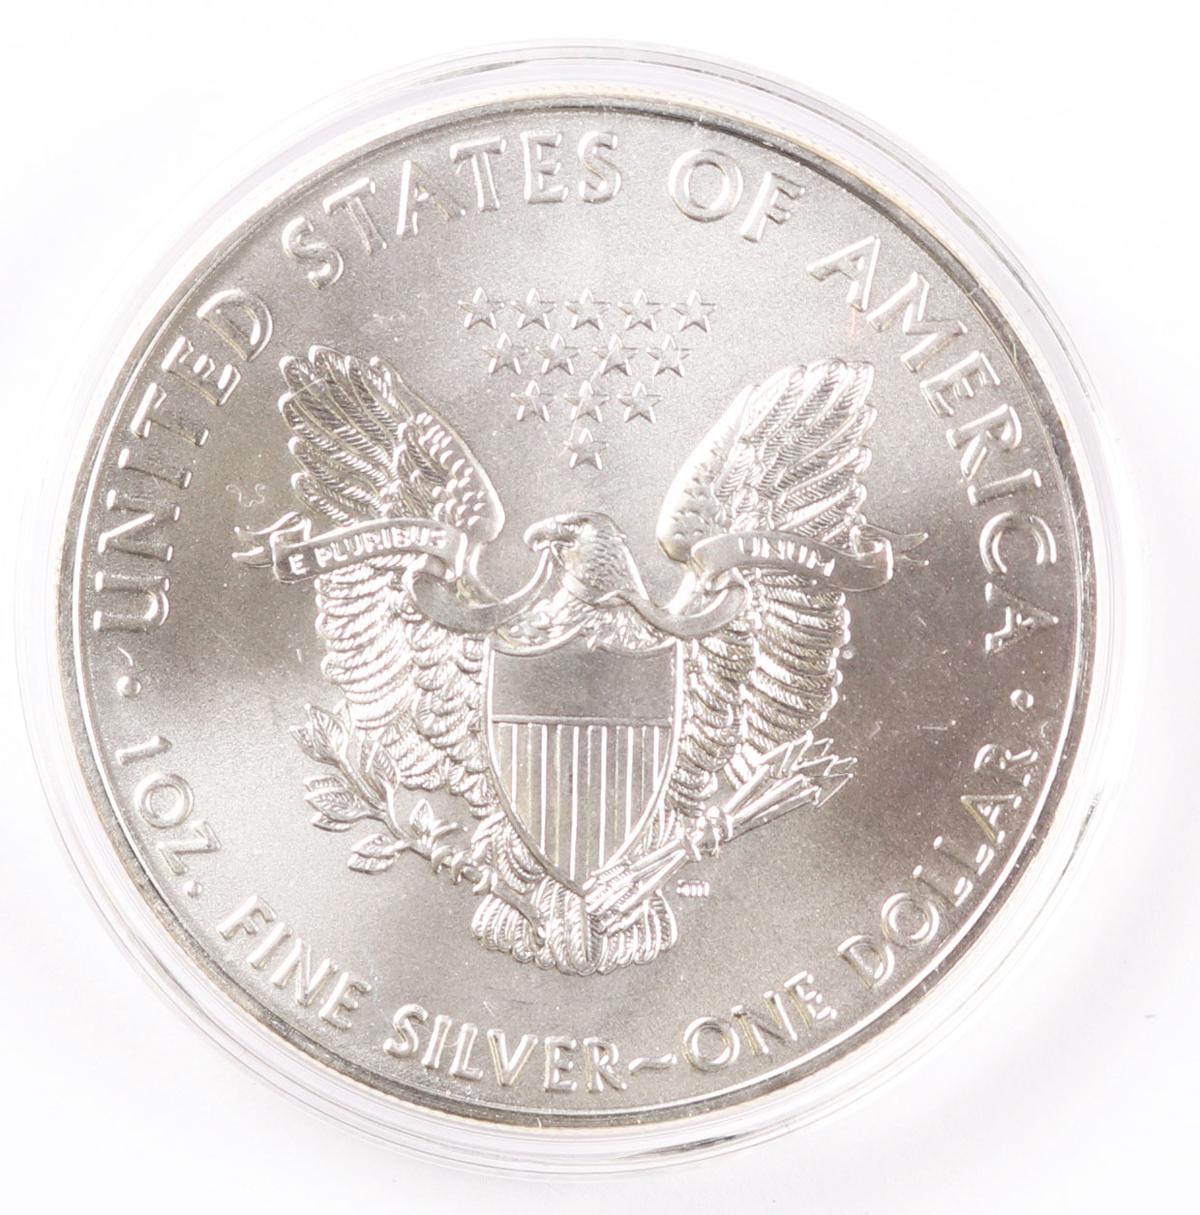 2017 $1 American Silver Eagle, 1oz. Fine Silver